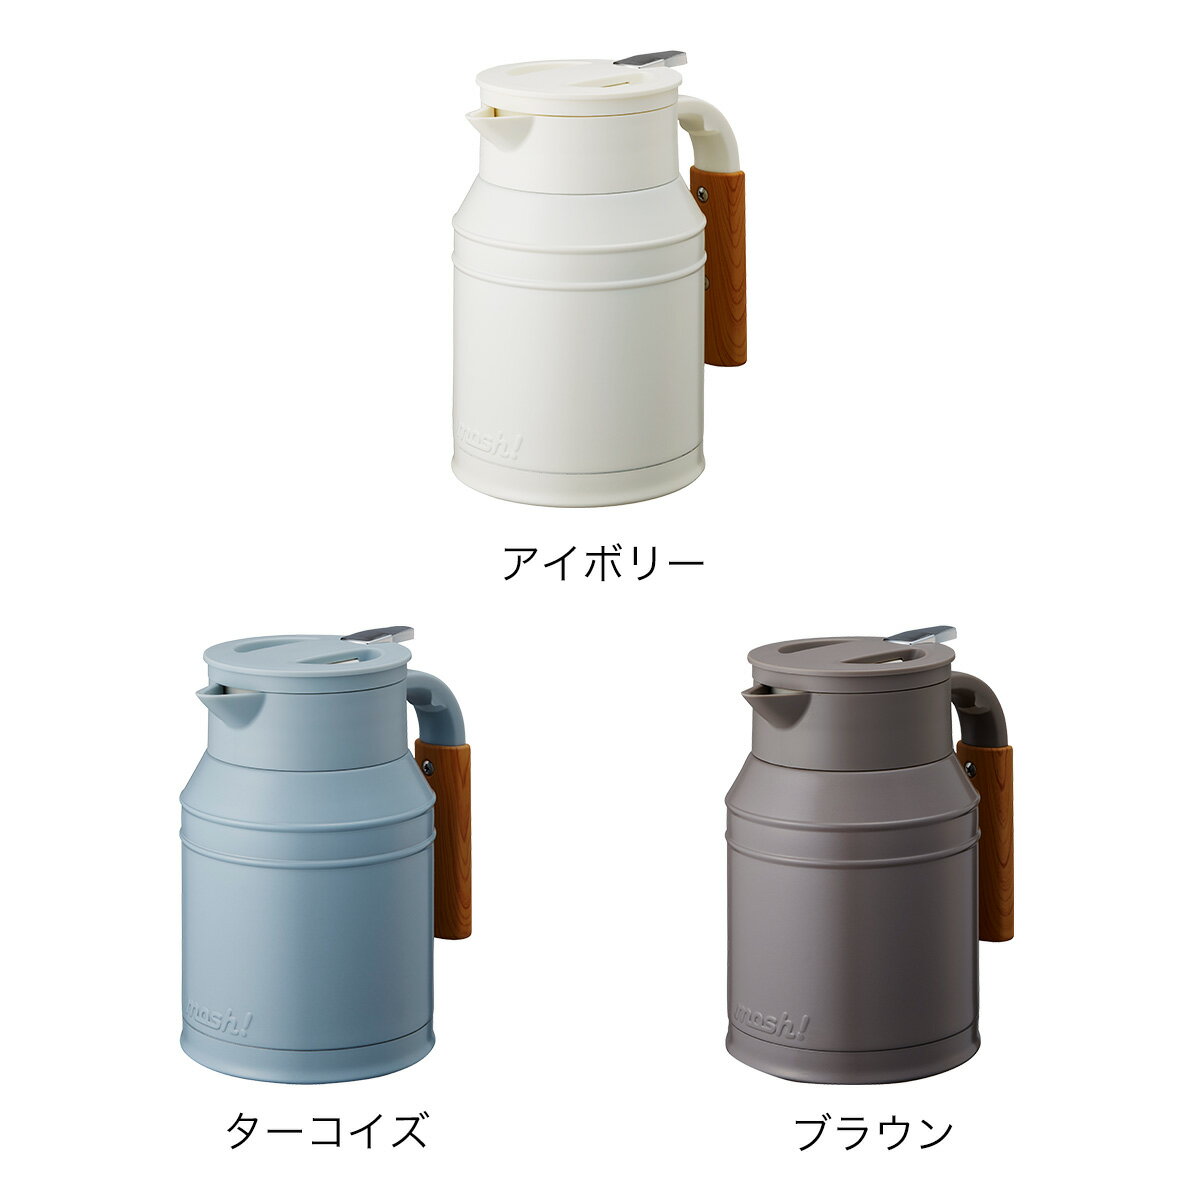 日本公司貨 Doshisha MOSH 不銹鋼保溫壺 DMTK1.0 保溫瓶 容量1L 口徑7公分 43度24小時保溫 日本必買代購